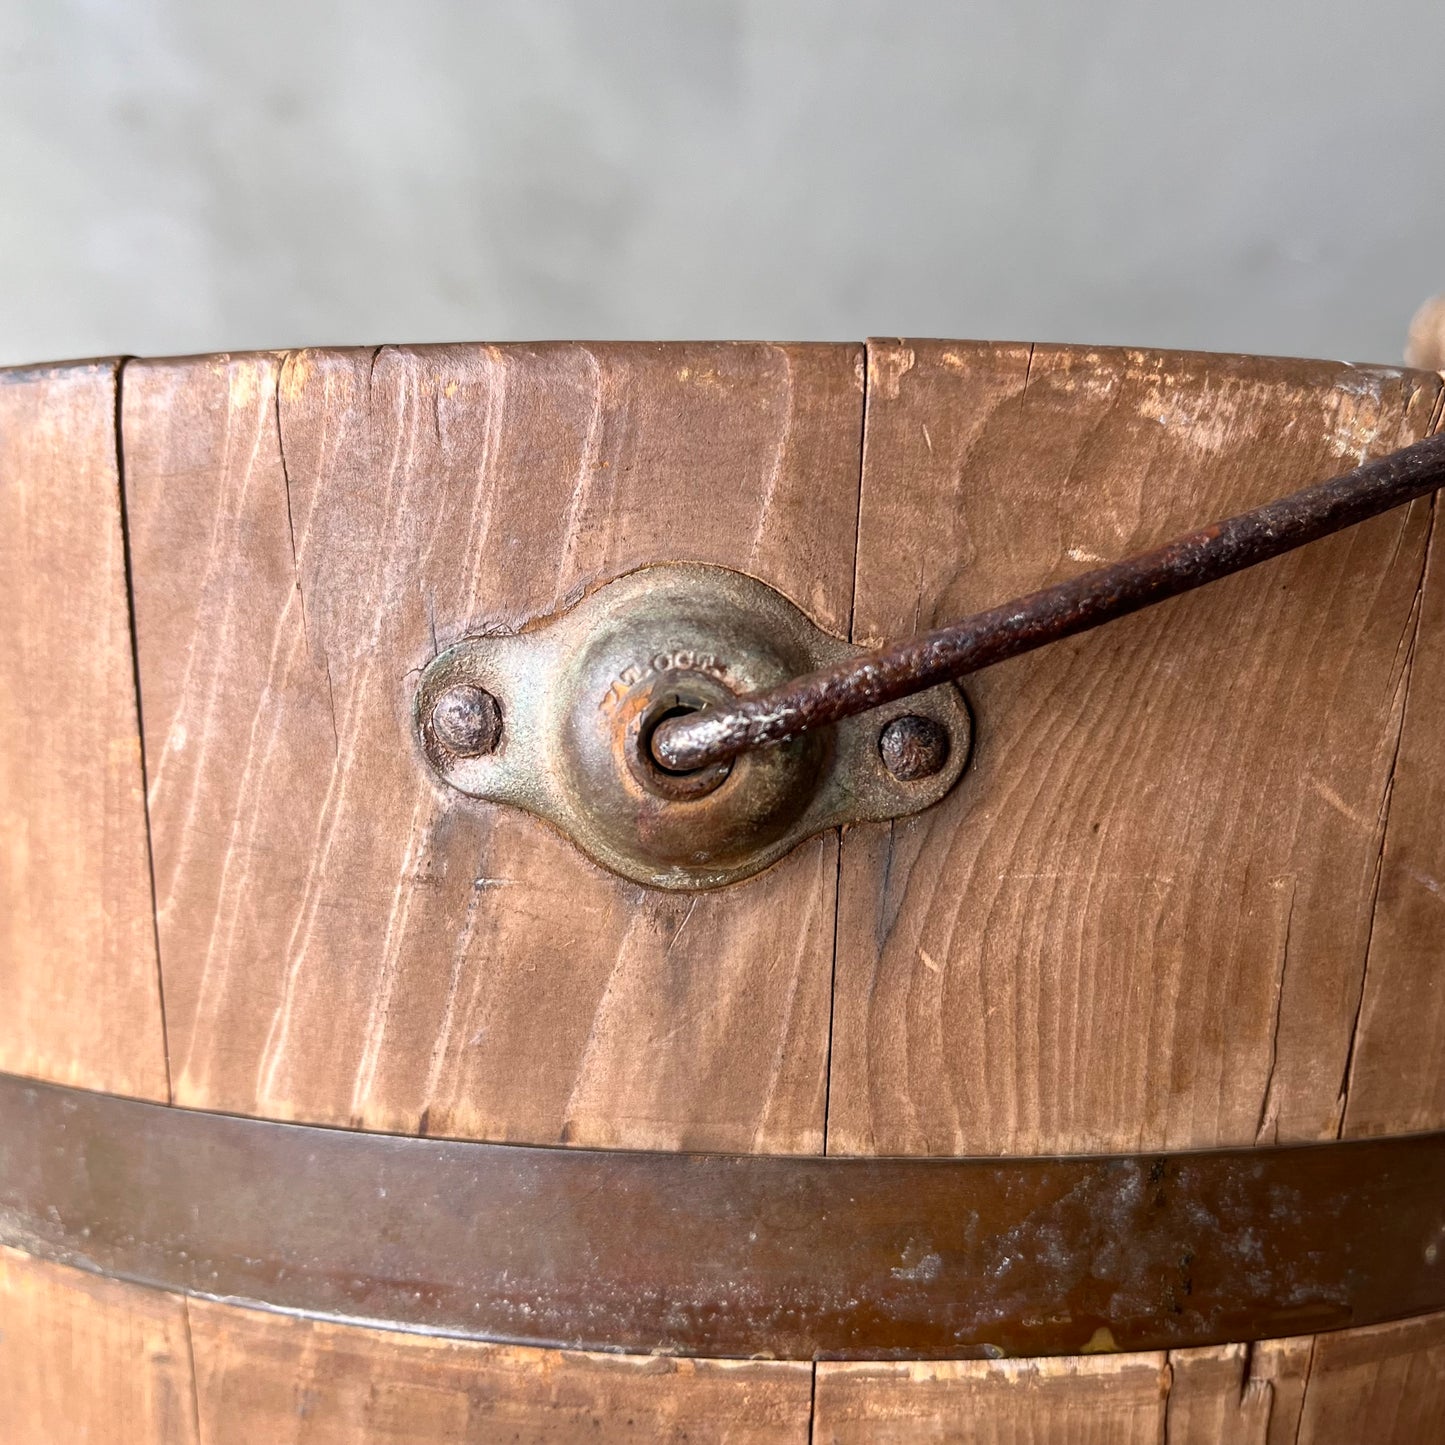 【USA 1950s】Wooden Bucket